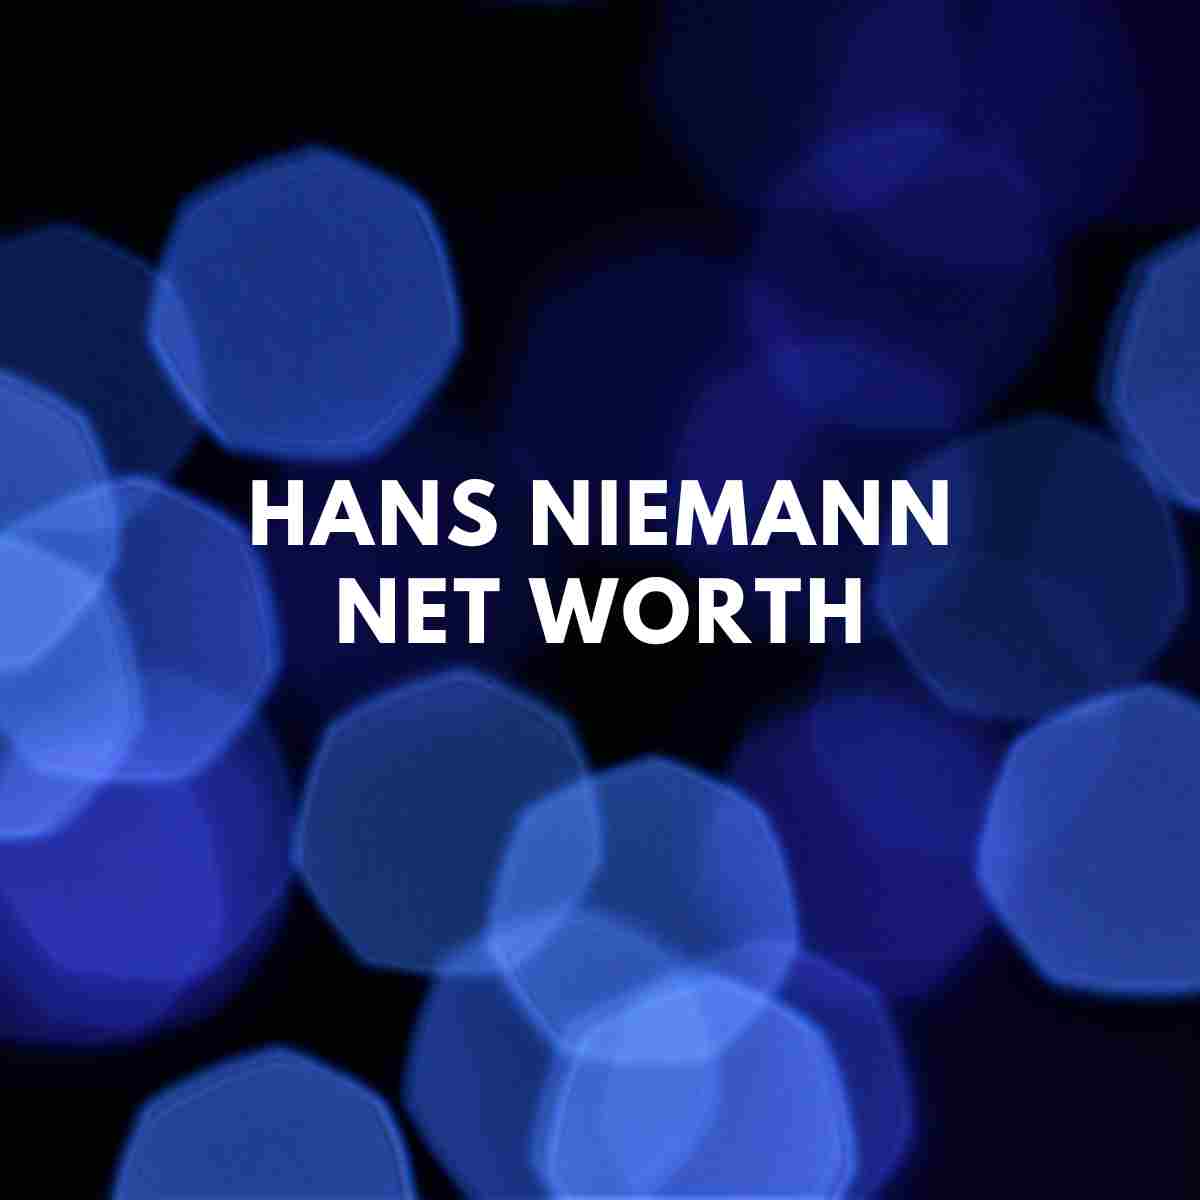 Hans Niemann net worth